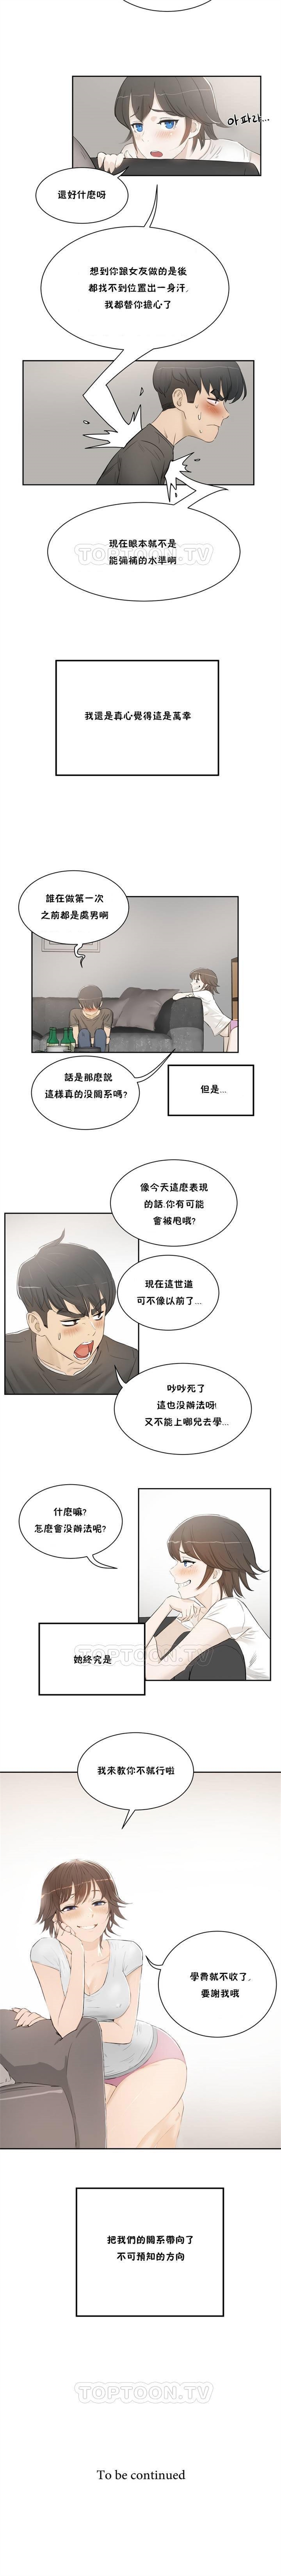 （周6）性教育 1-45 中文翻译（更新中） page 8 full